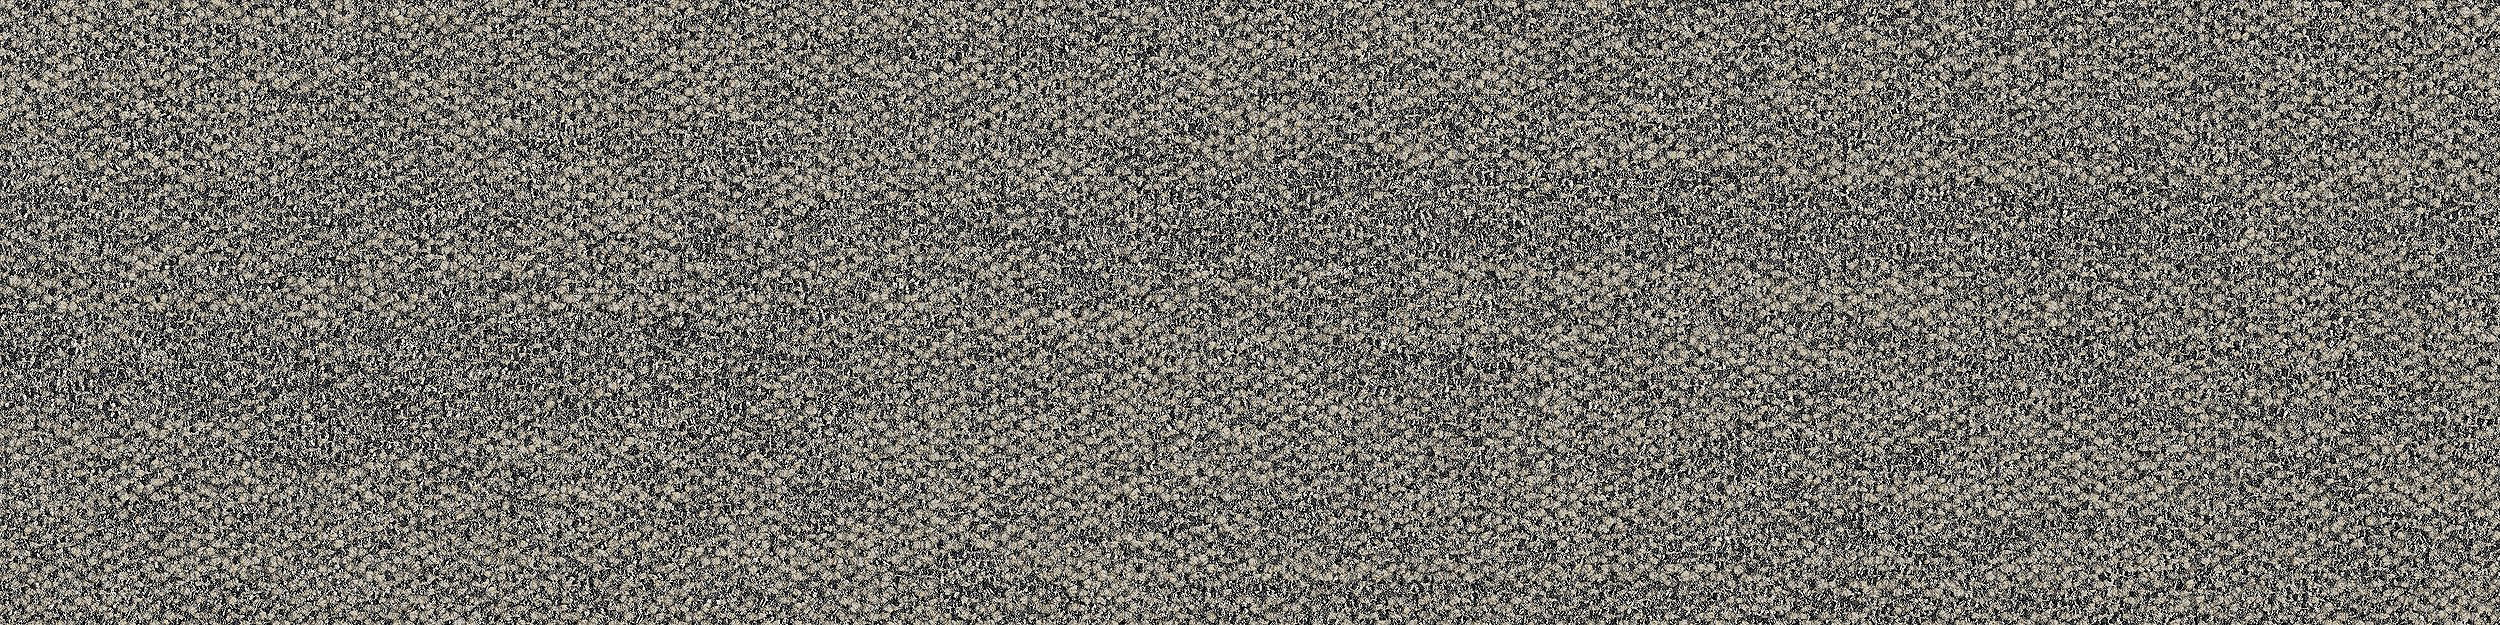 Open Air 402 Carpet Tile In Natural numéro d’image 6